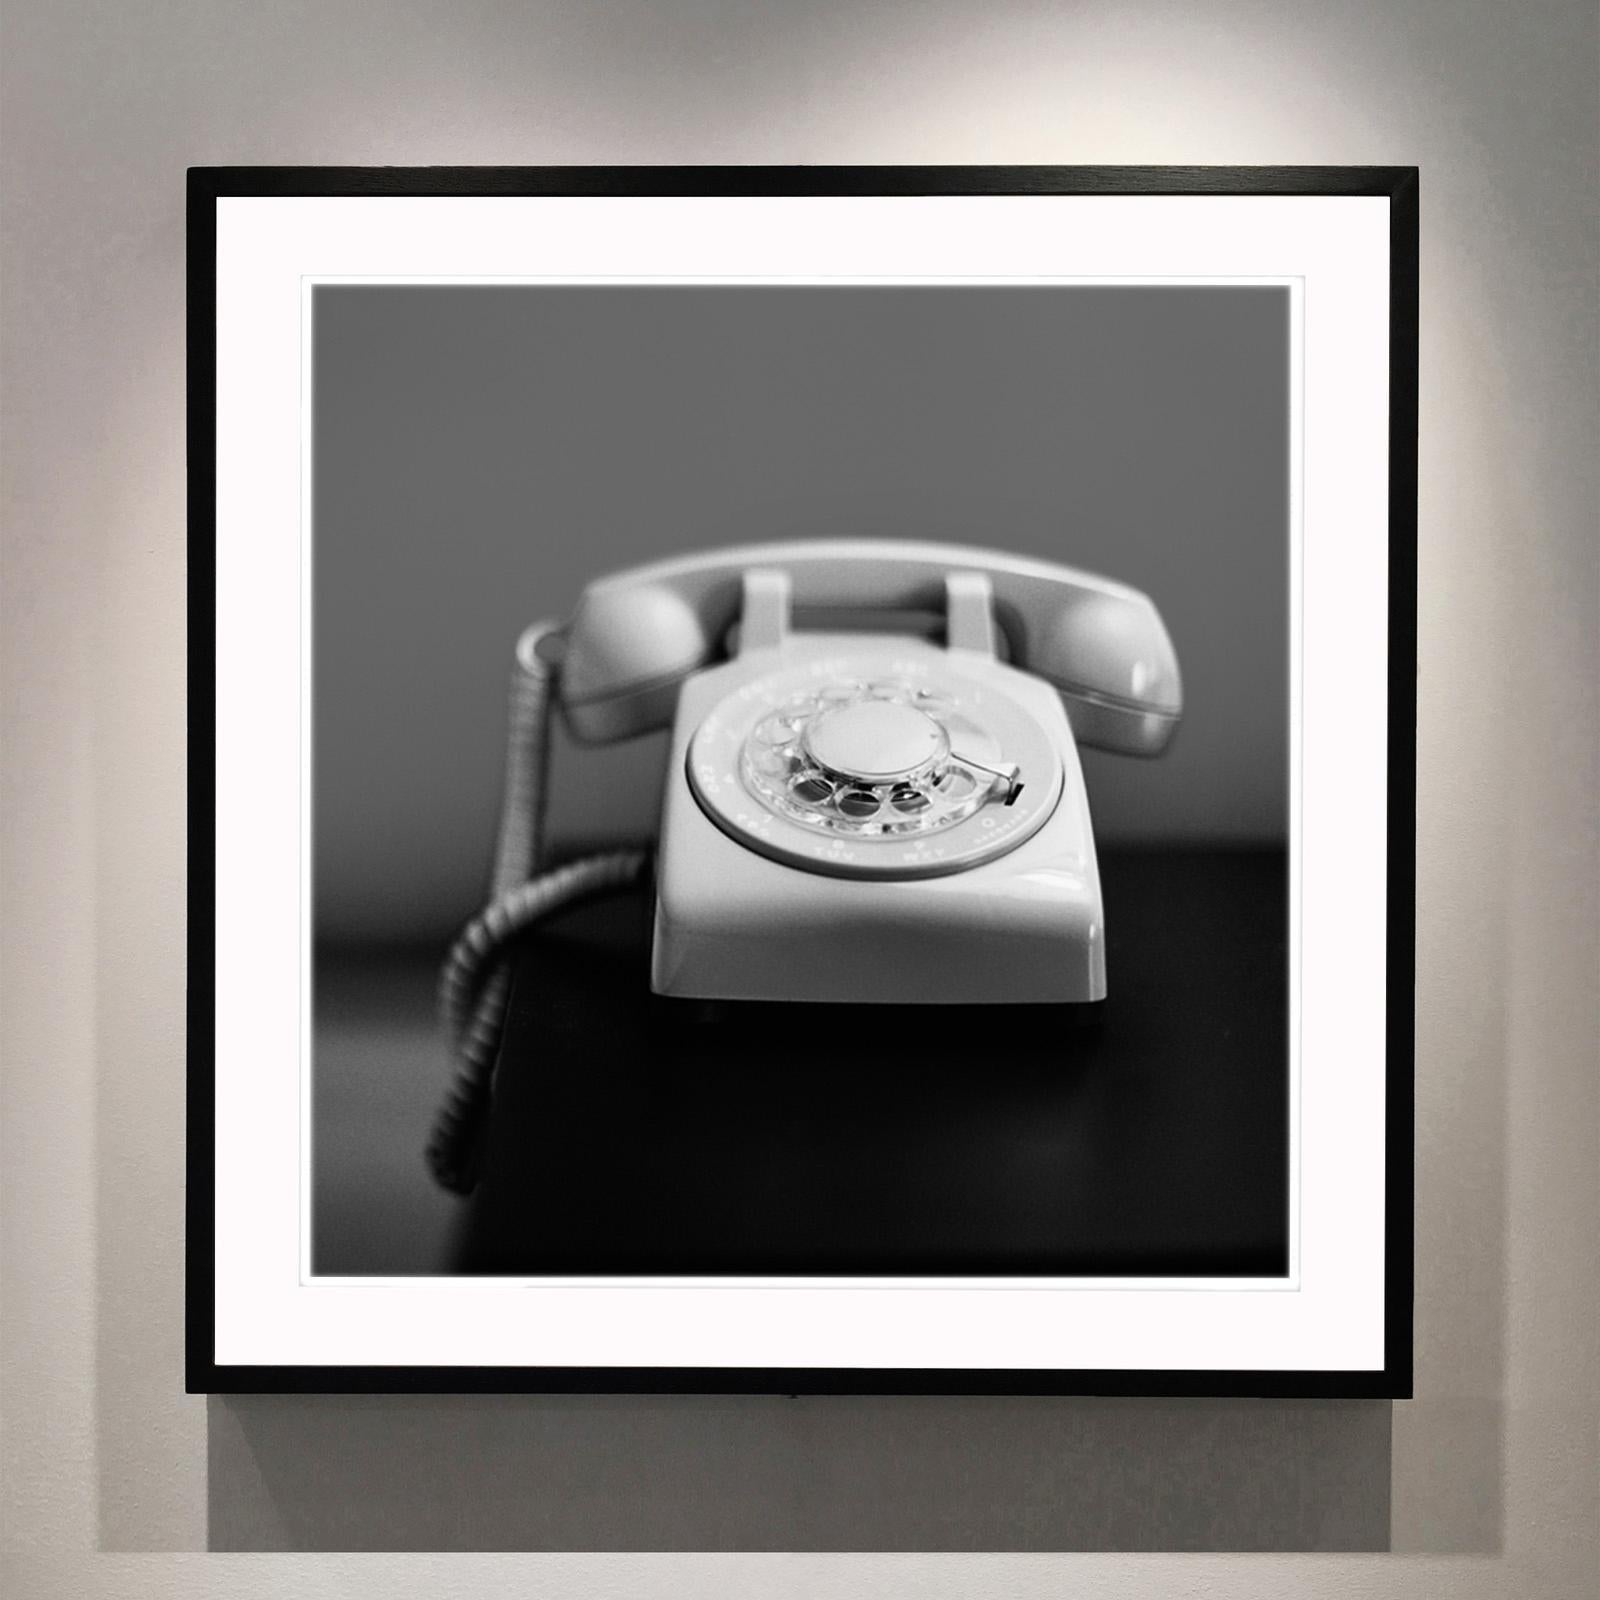 Telephone, Palm Springs, Kalifornien – amerikanische quadratische Fotografie in Schwarz-Weiß – Photograph von Richard Heeps